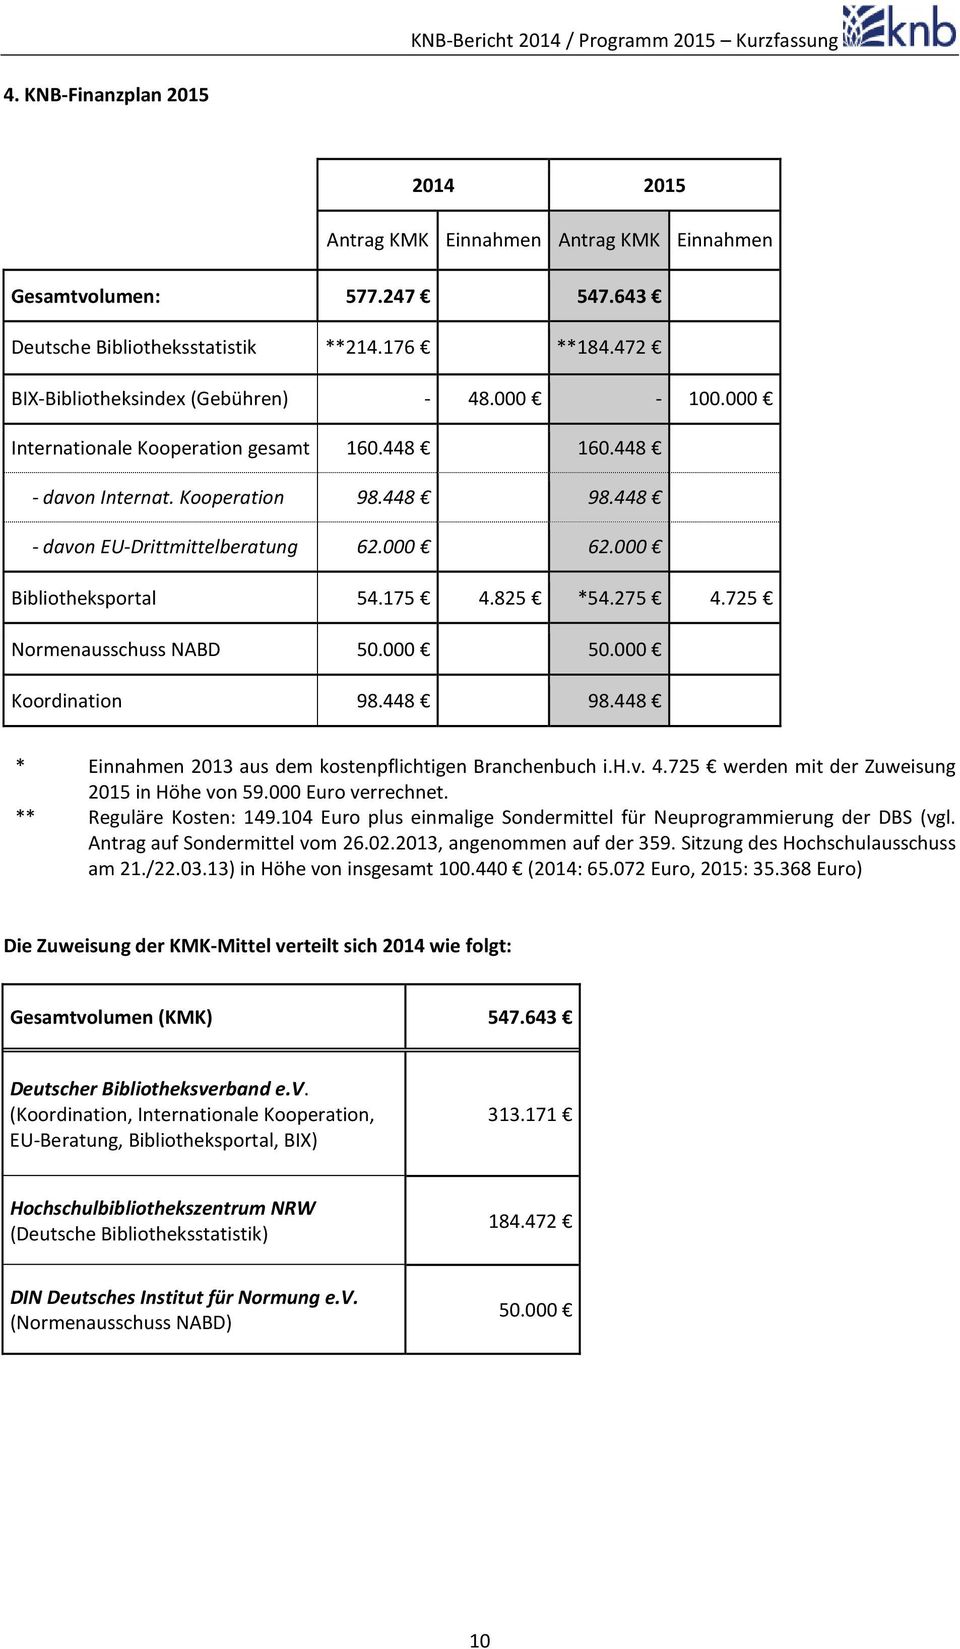 725 Normenausschuss NABD 50.000 50.000 Koordination 98.448 98.448 * Einnahmen 2013 aus dem kostenpflichtigen Branchenbuch i.h.v. 4.725 werden mit der Zuweisung 2015 in Höhe von 59.000 Euro verrechnet.